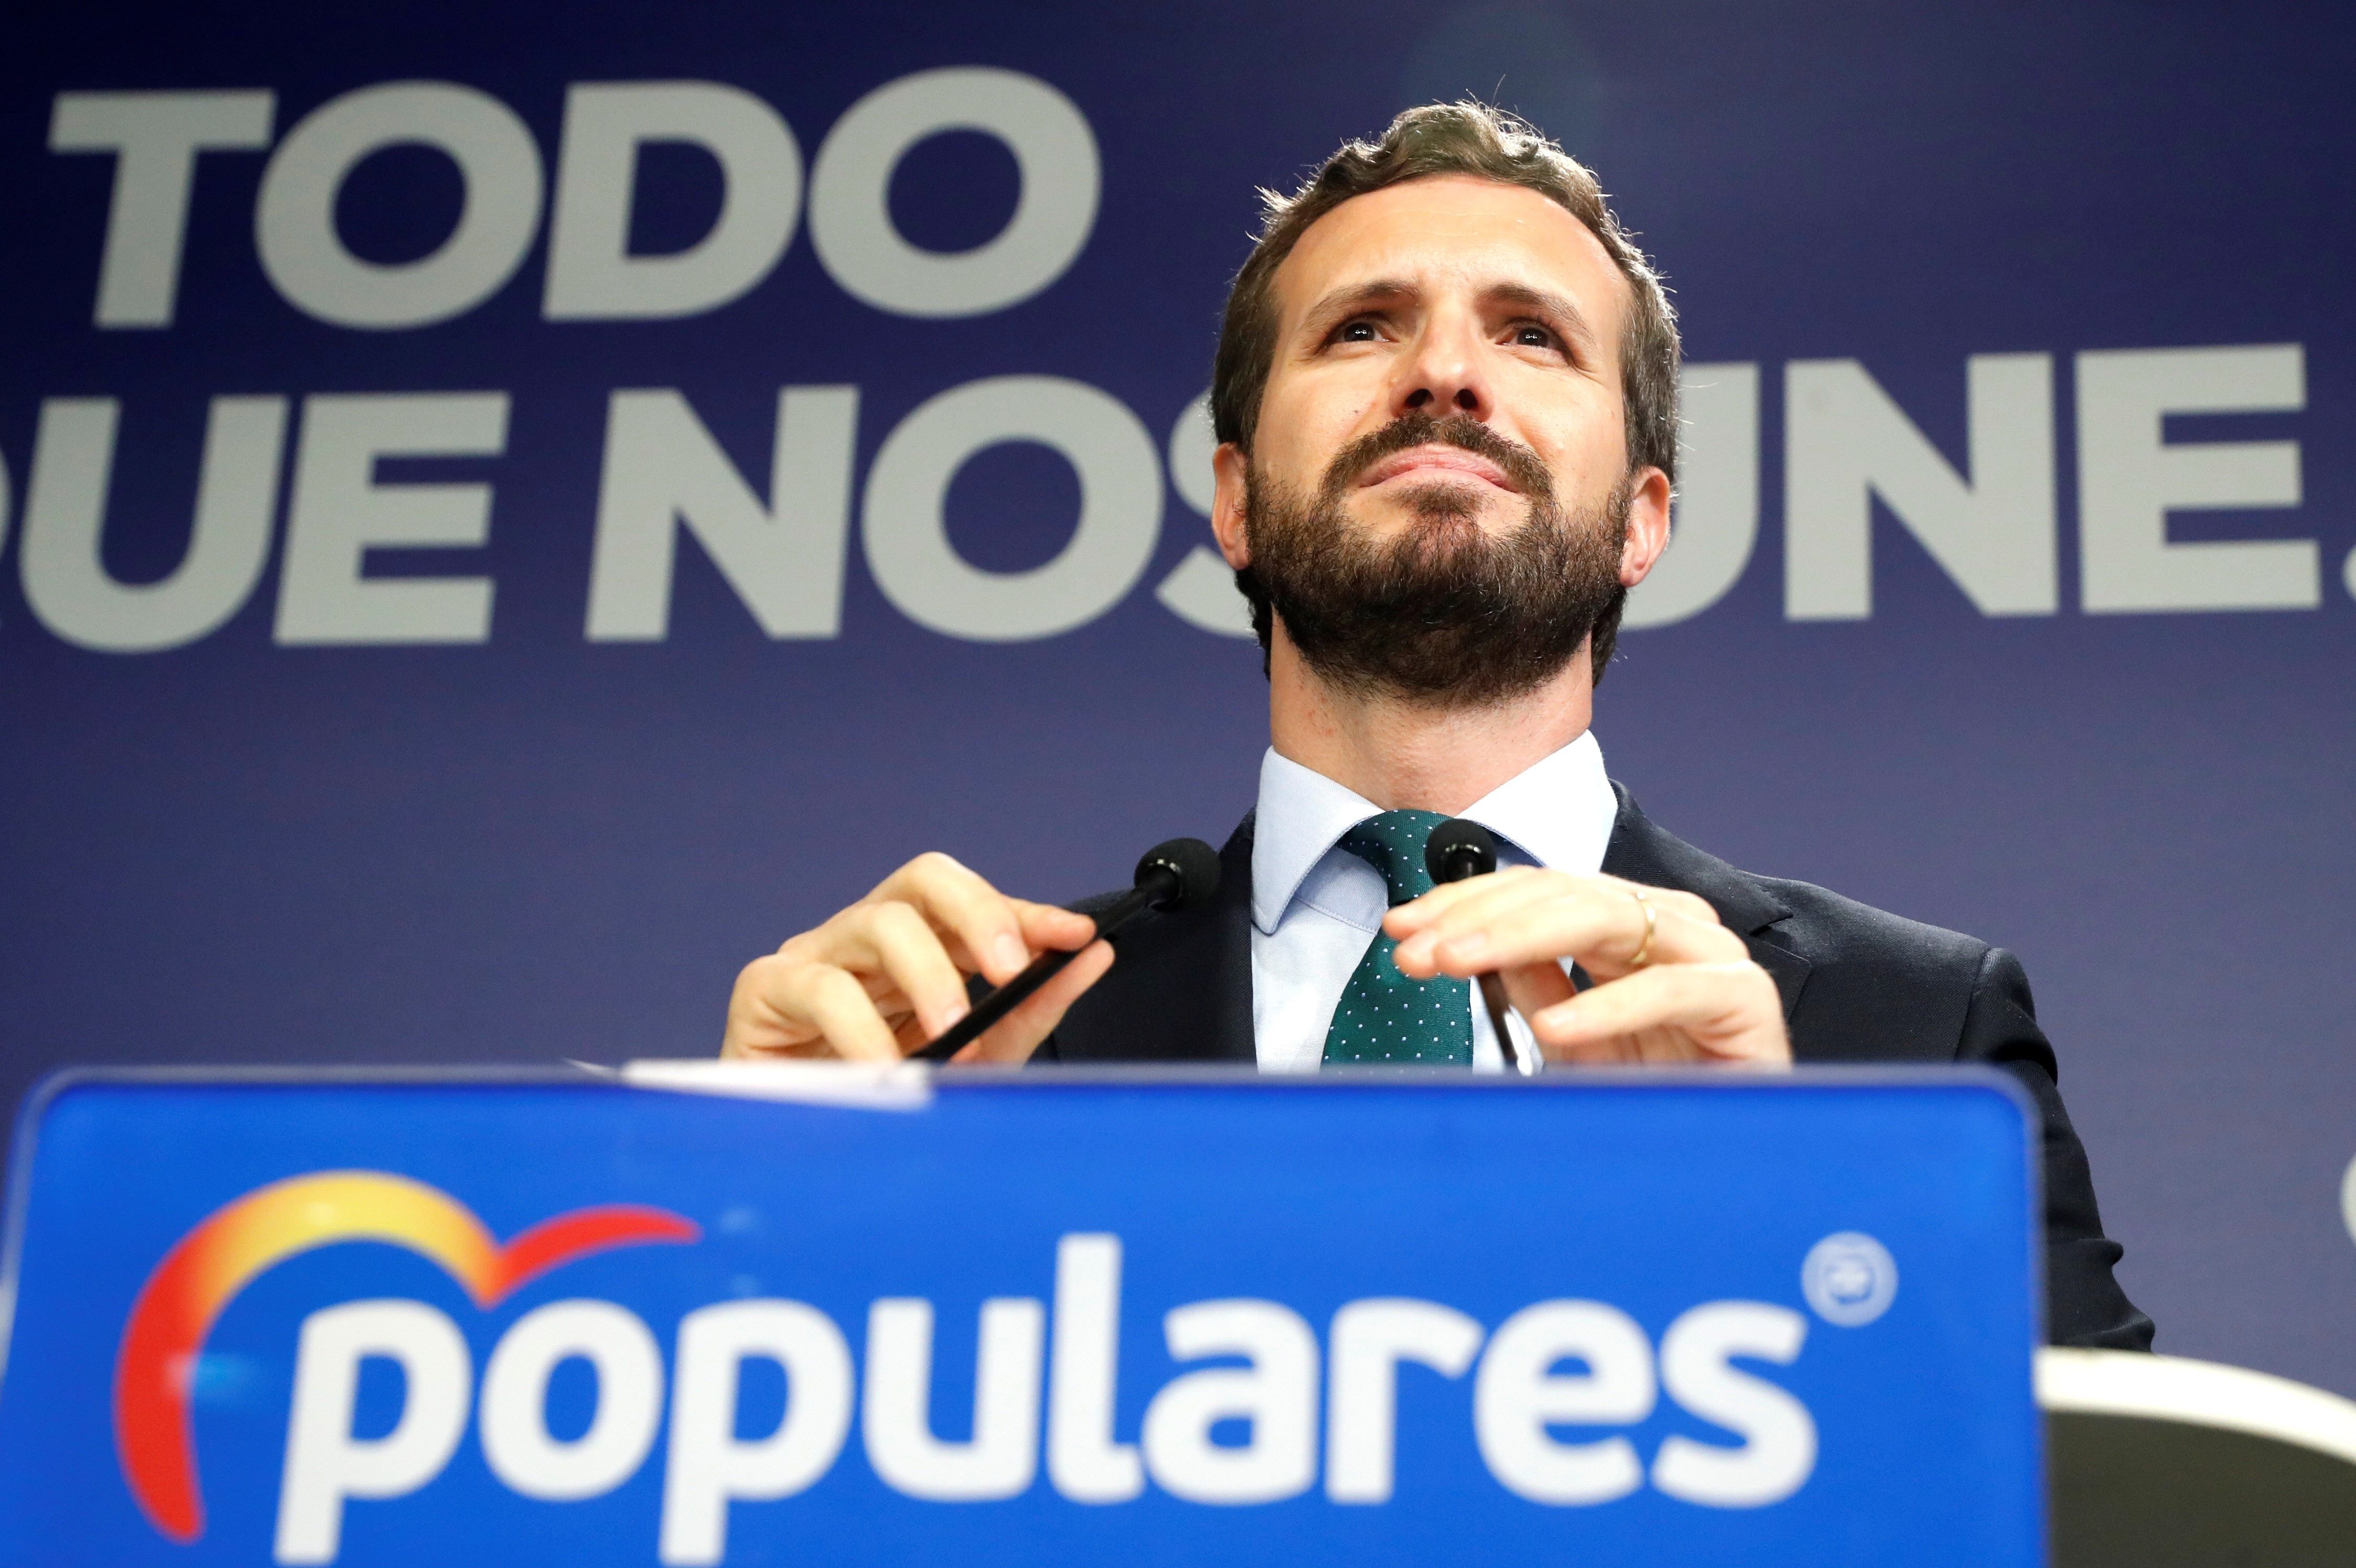 Casado promet una oposició "ferma i rotunda" al govern del PSOE i Podemos